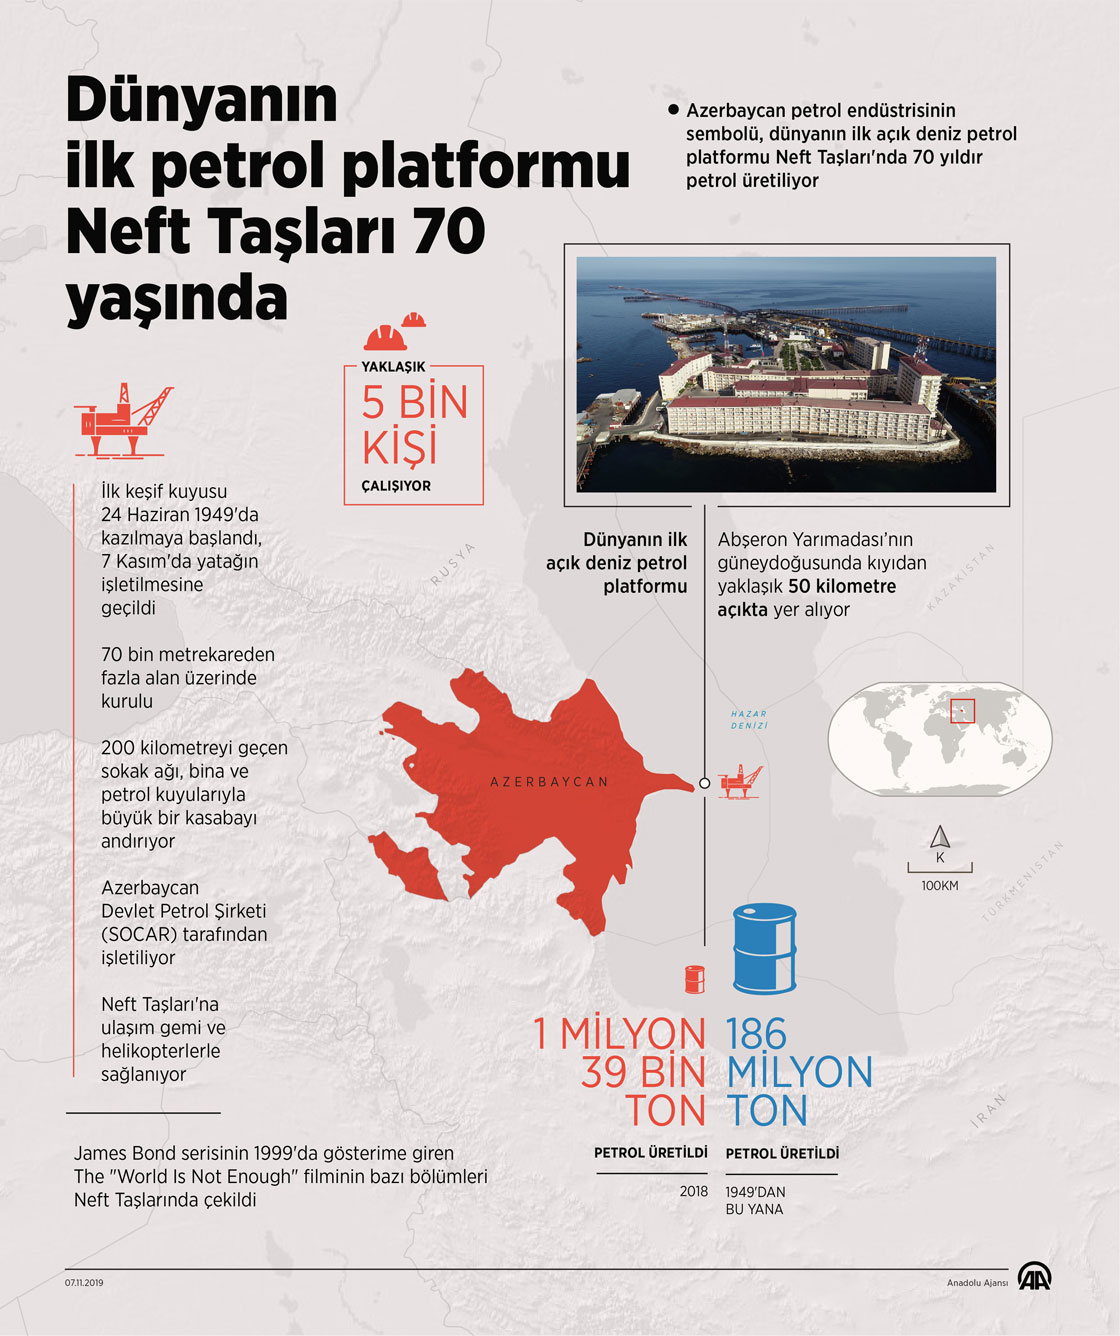 Dünyanın ilk açık deniz petrol platformu Neft Taşları 70 yaşında